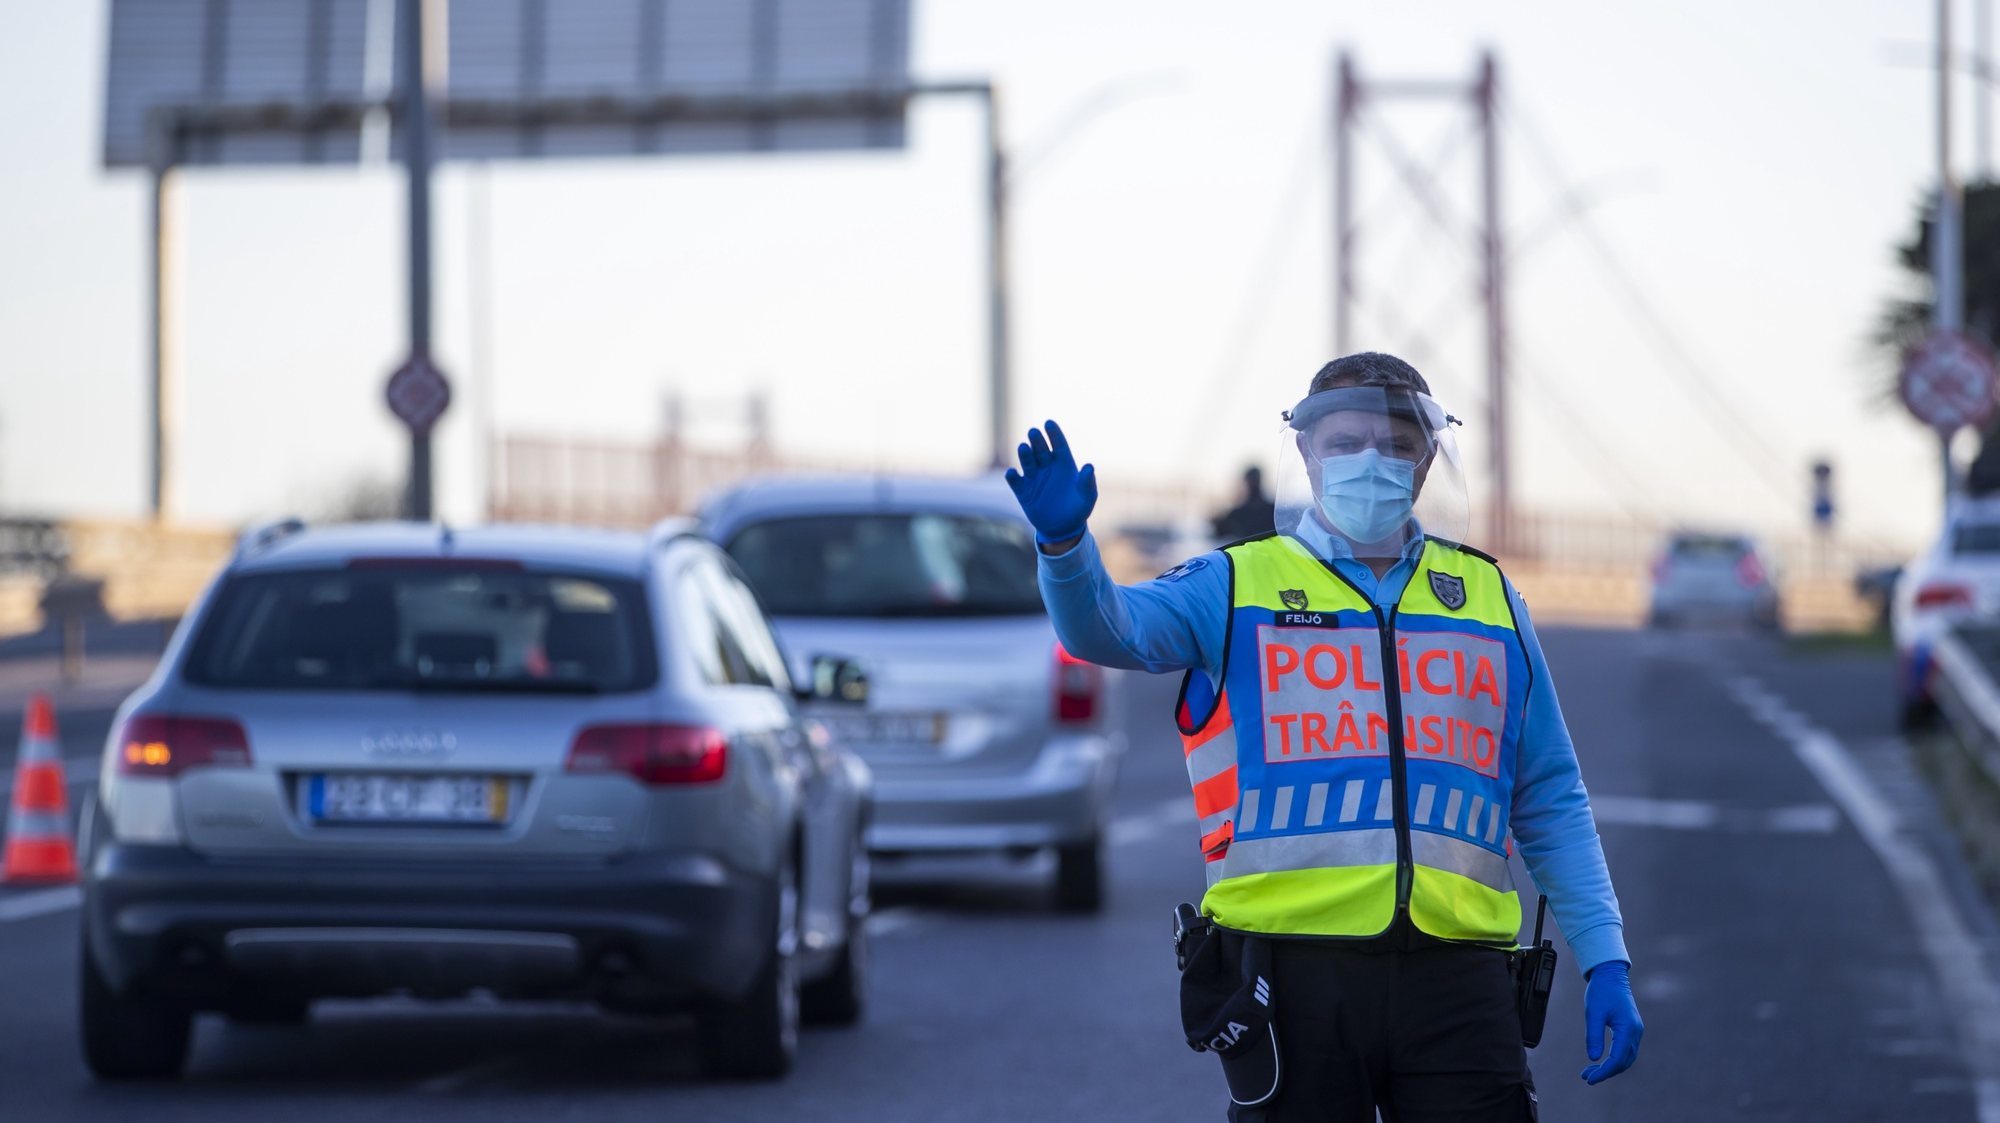 Um agente da Polícia de Segurança Pública (PSP) durante uma operação Stop no acesso à Ponte 25 de Abril, em Lisboa, 30 de outubro de 2020. A circulação entre concelhos do continente está proibida entre os dias 30 de outubro e 03 de novembro devido à pandemia de covid-19. JOSÉ SENA GOULÃO/LUSA